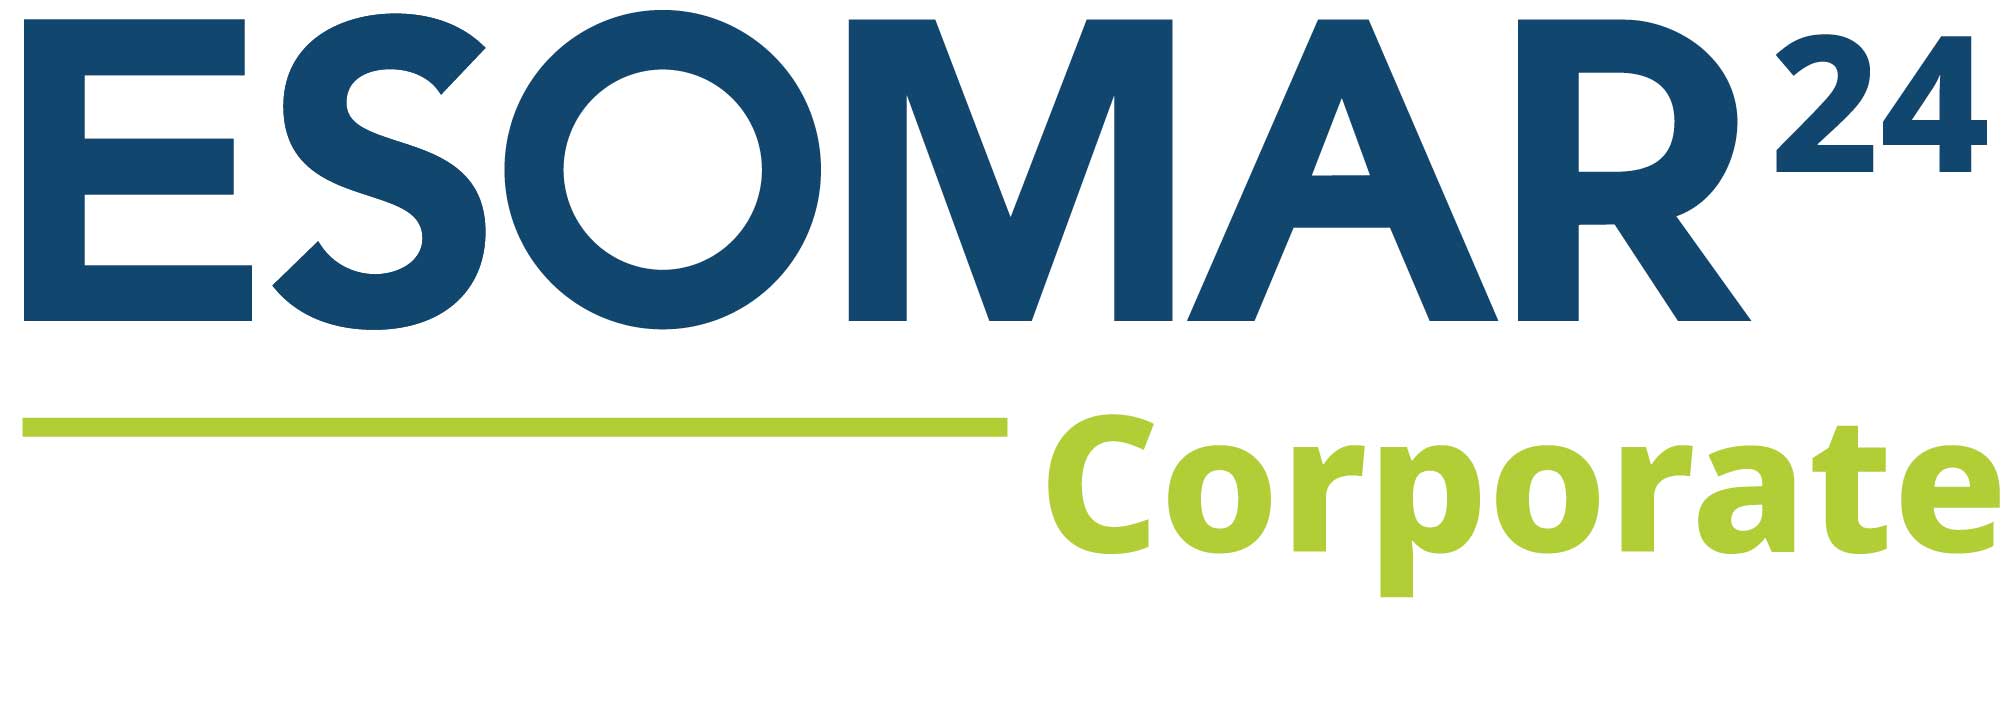 ESOMAR Corporate Membership Information